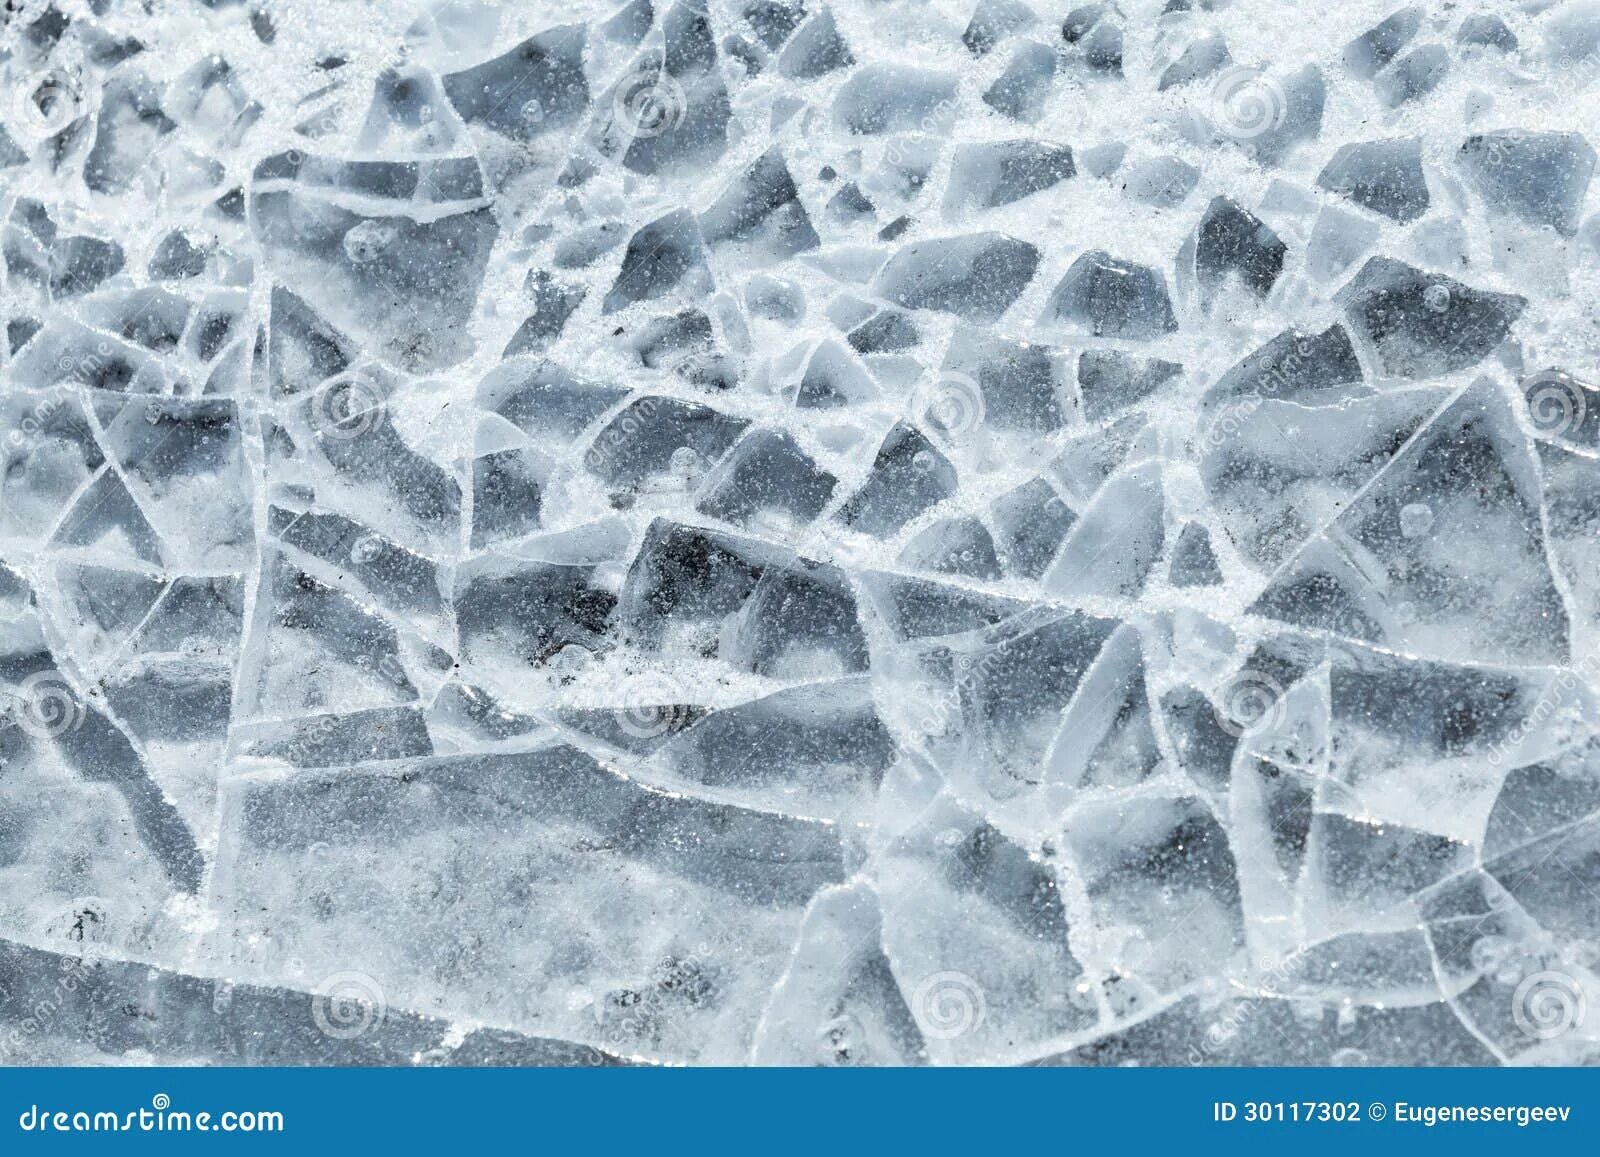 Осколки льда. Разбитый лед. Текстура разбитого льда. Трещины на льду.